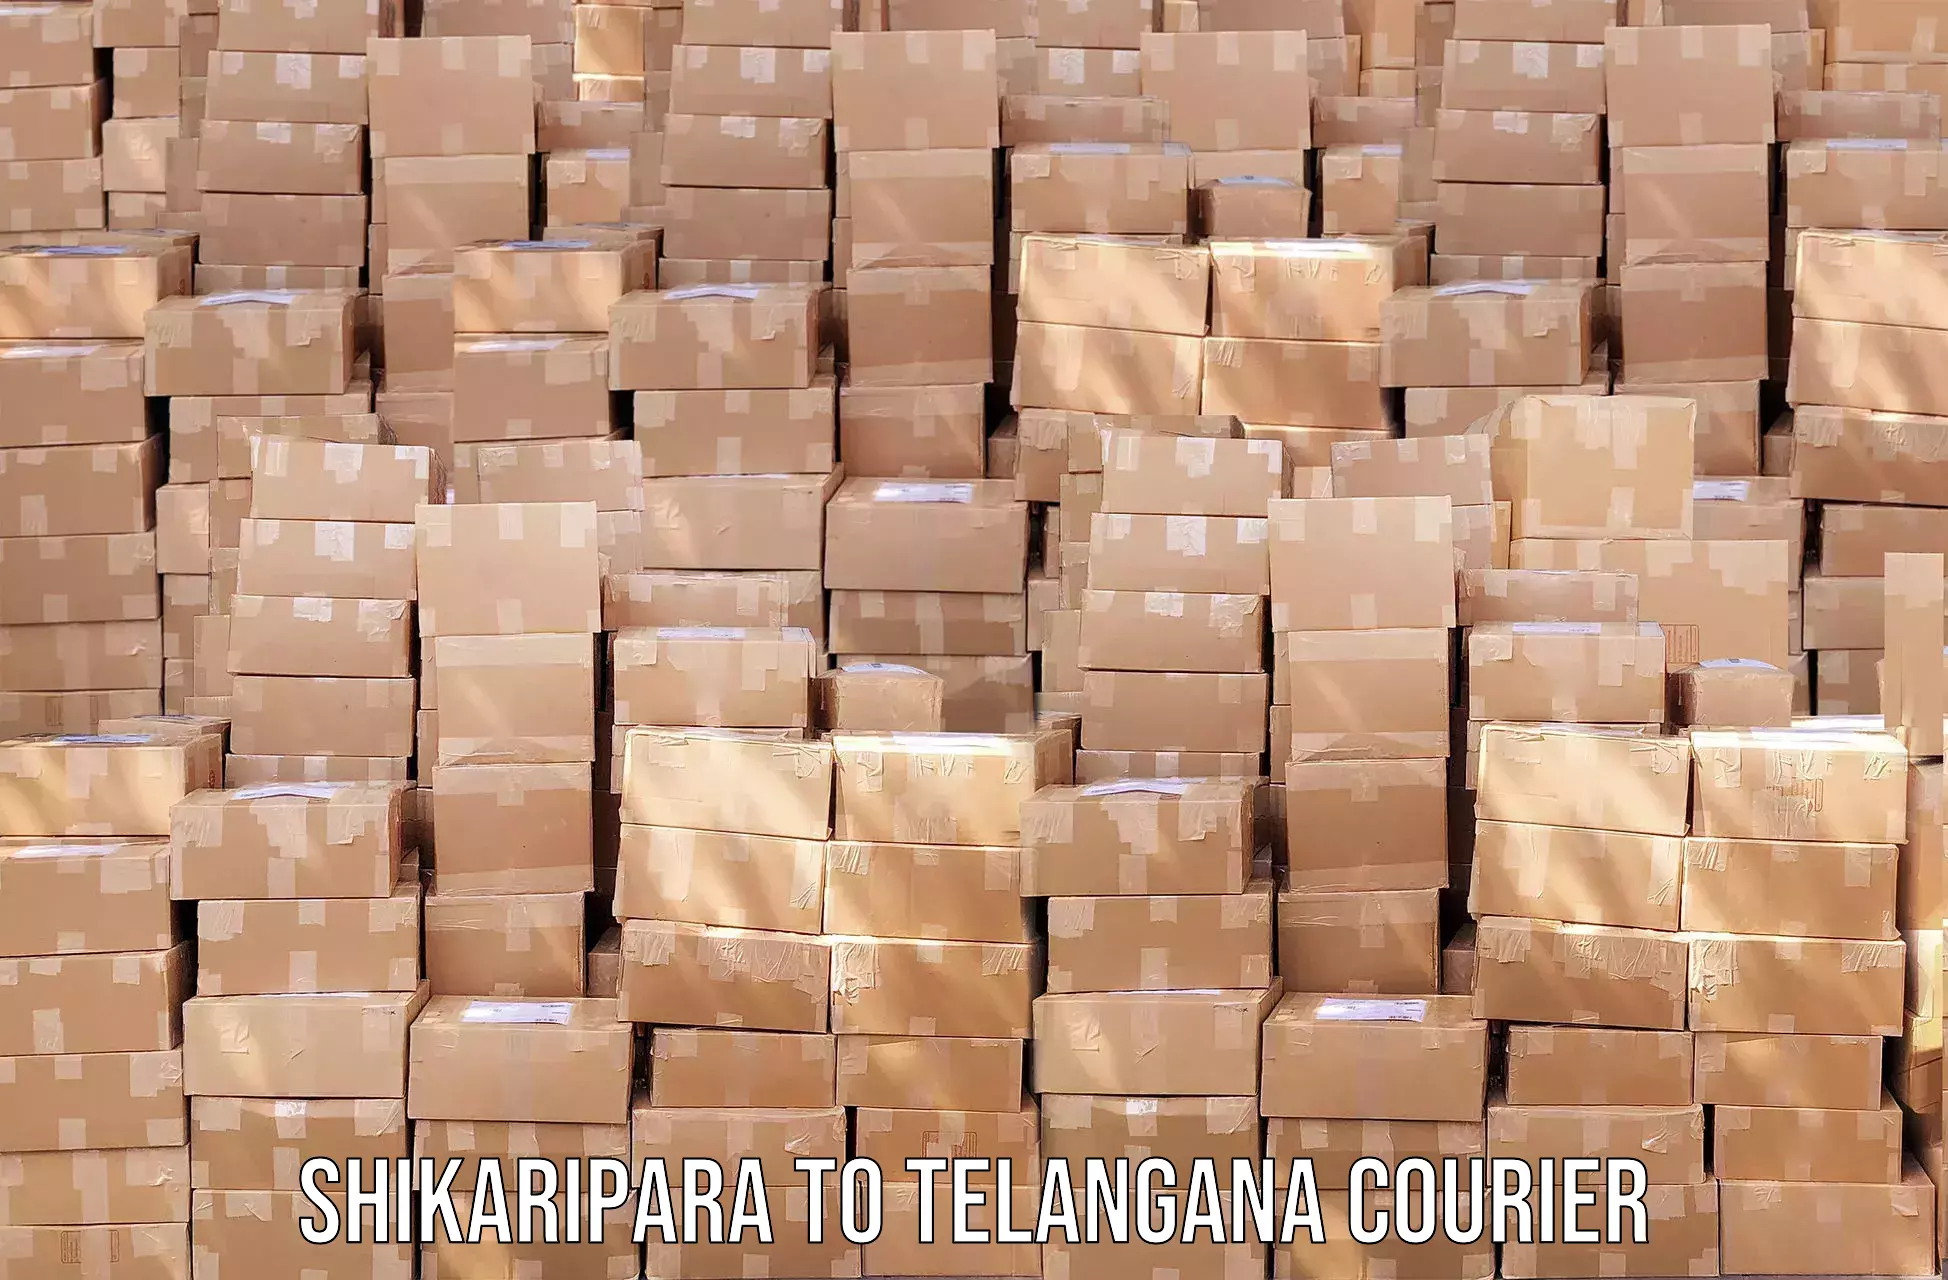 Round-the-clock parcel delivery Shikaripara to Bhuvanagiri